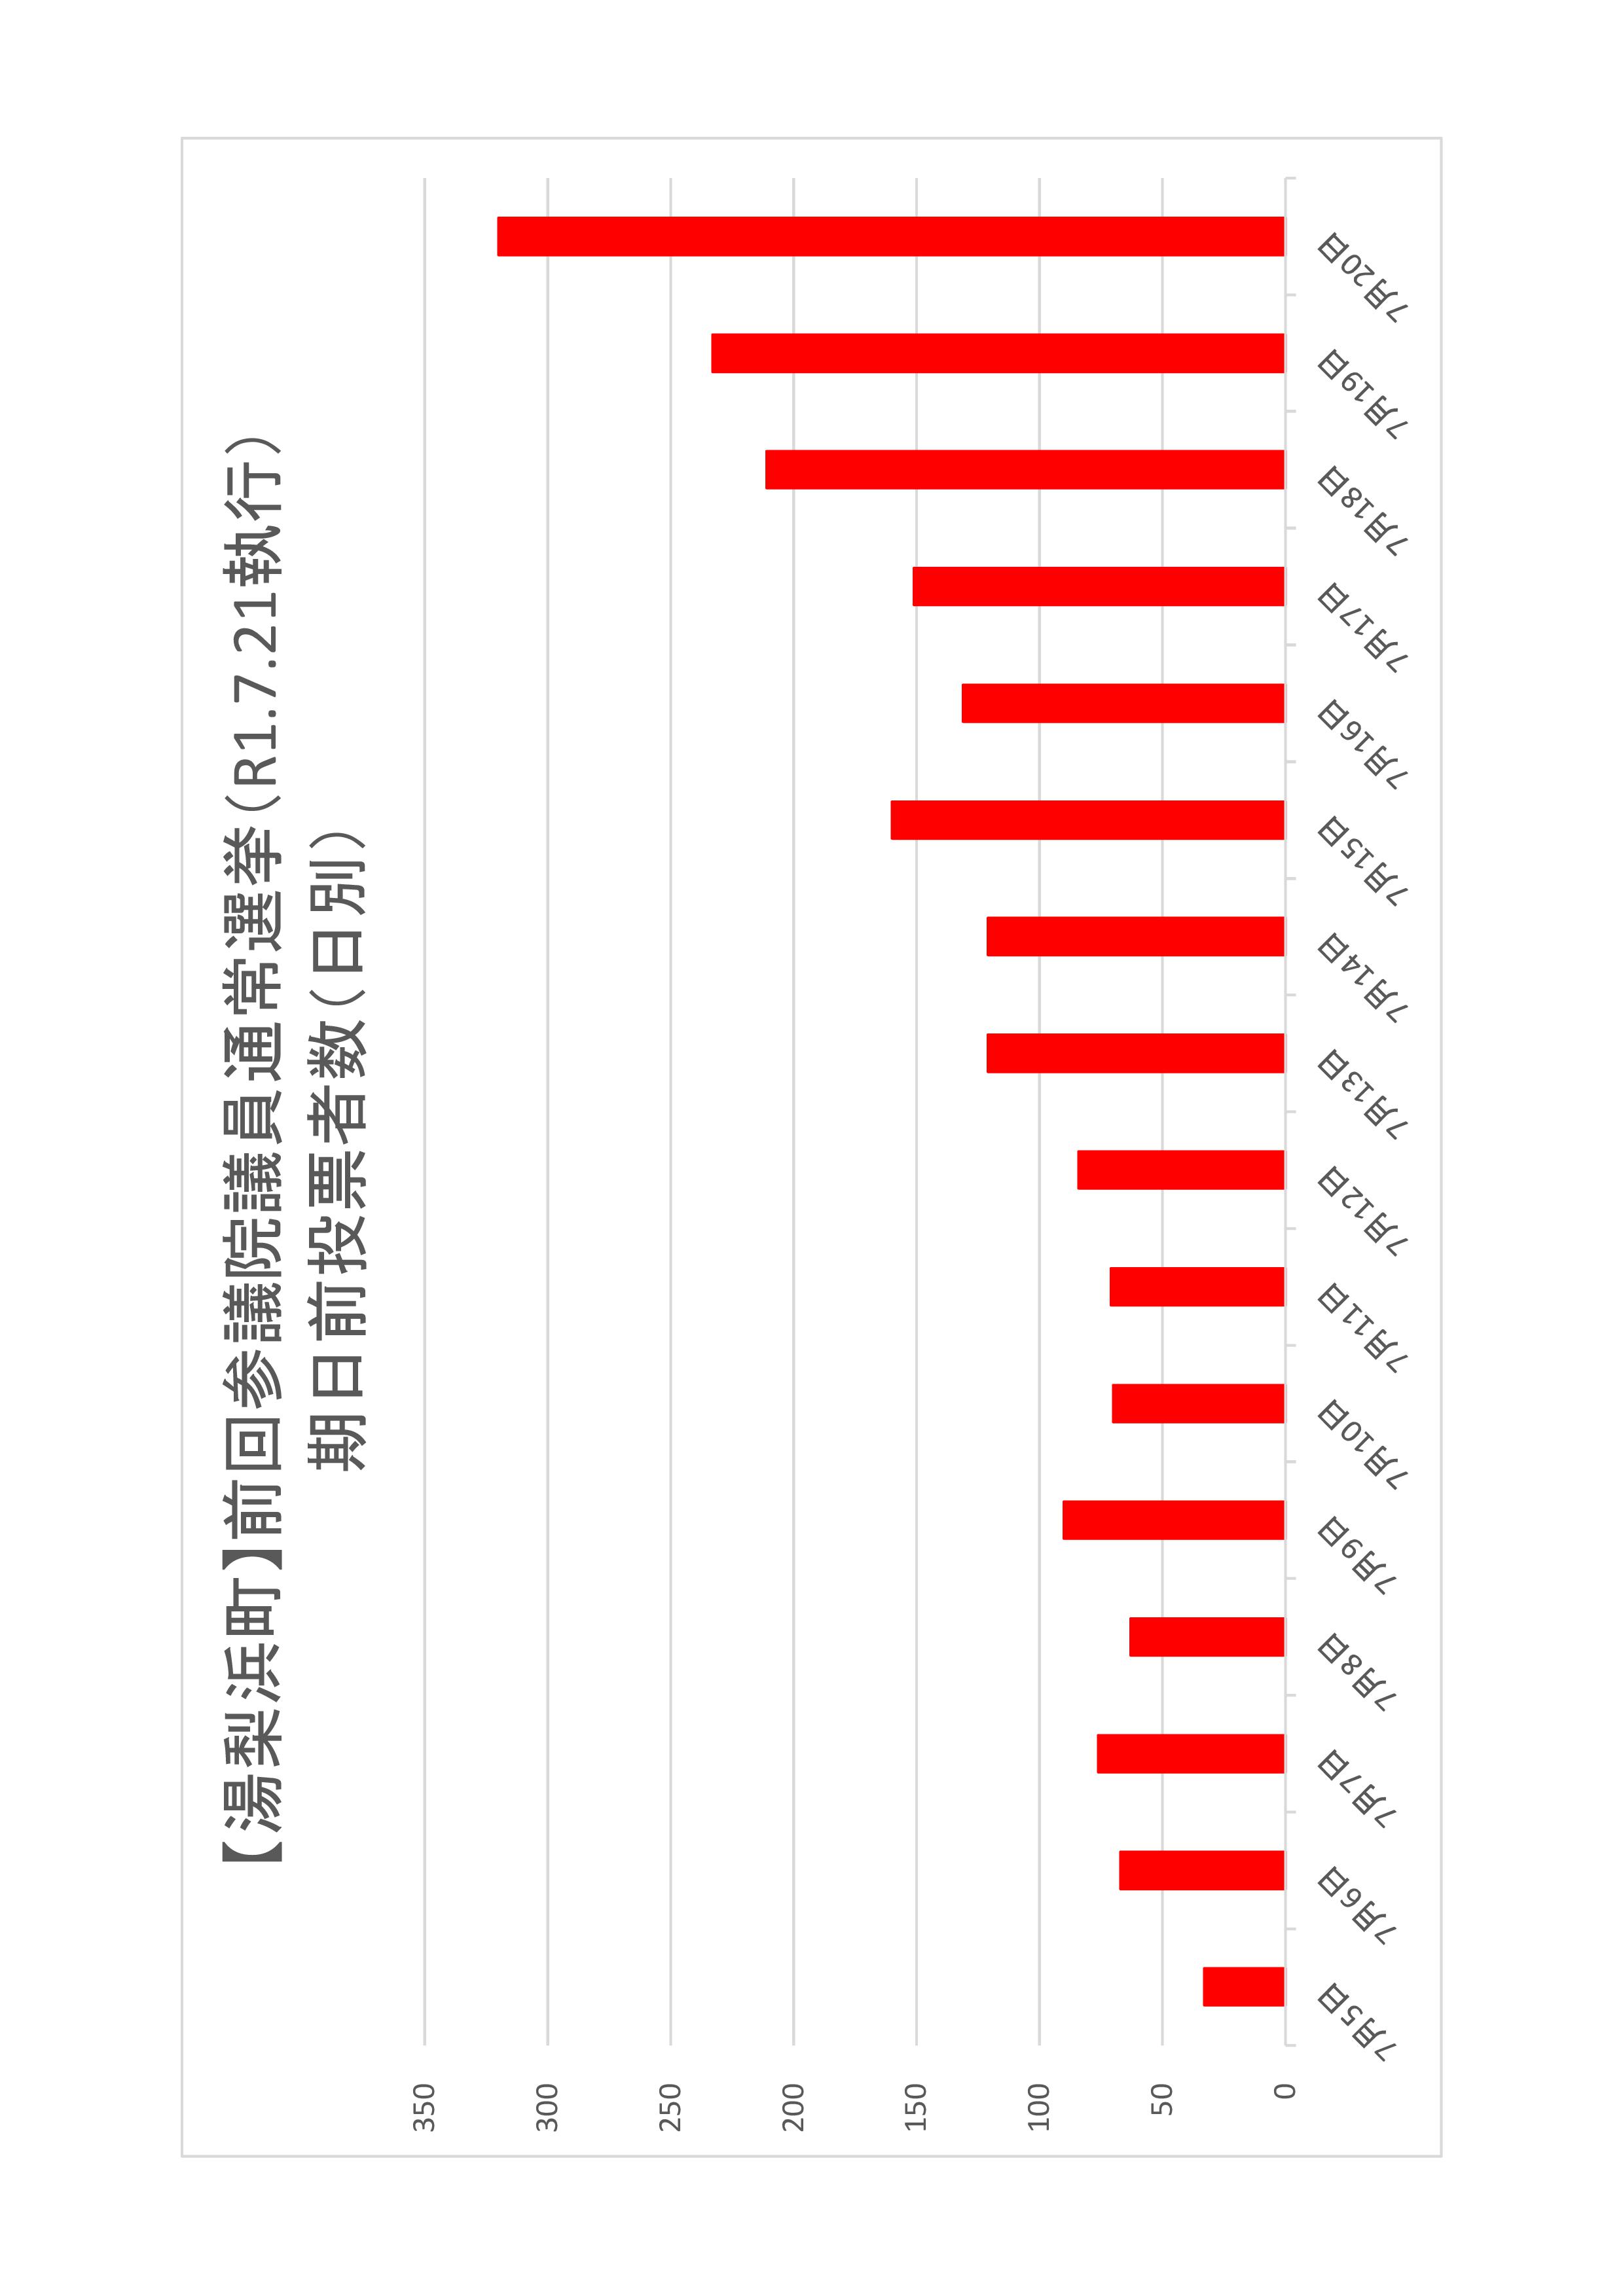 湯梨浜町の日別期日前投票者数のグラフ